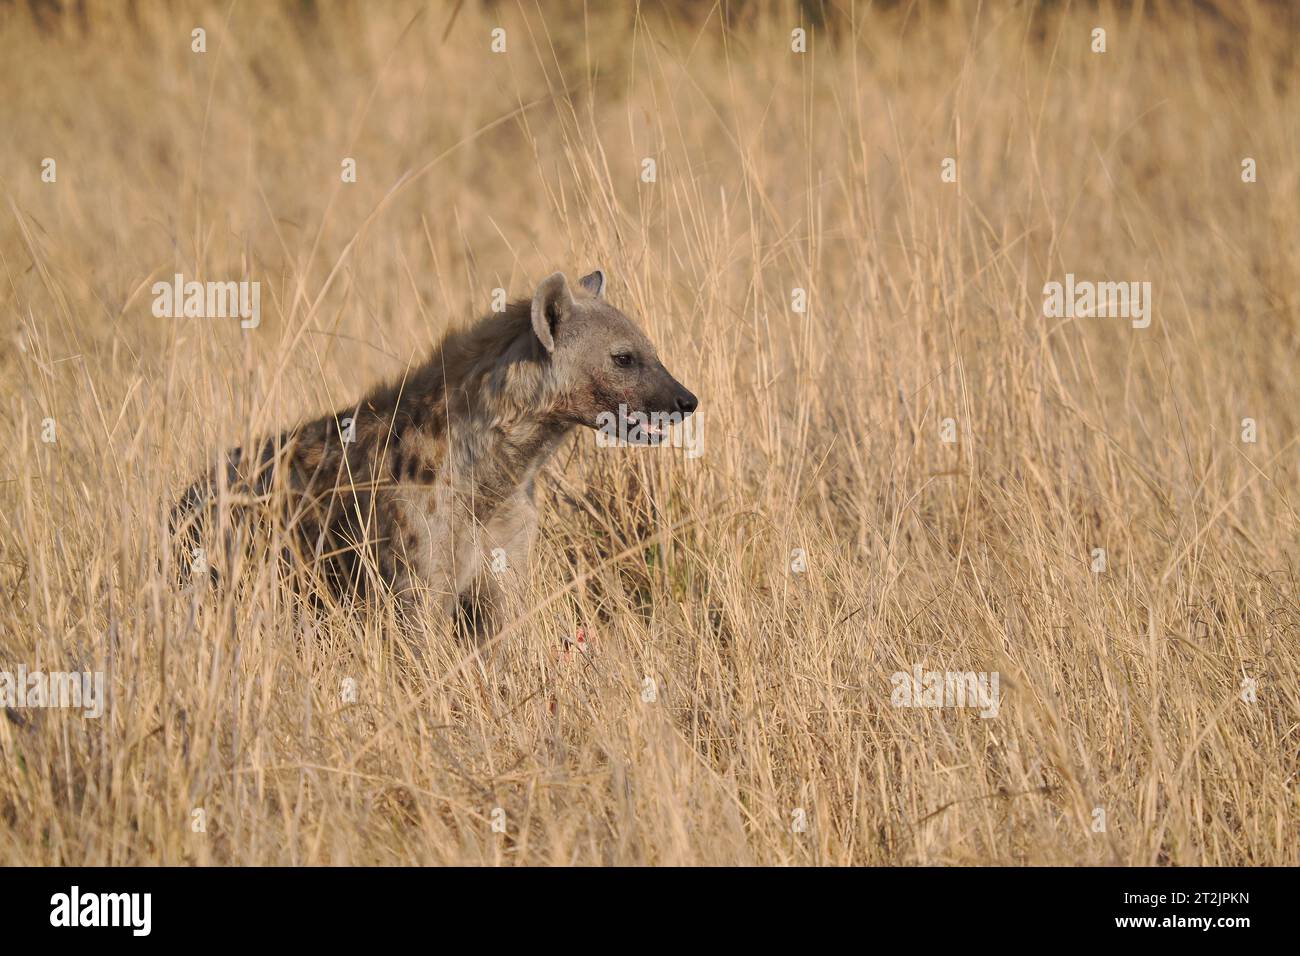 Questa iena macchiata aveva trovato una caraffa che stava mangiando, ma spesso osservava il suo ambiente per il pericolo. Foto Stock